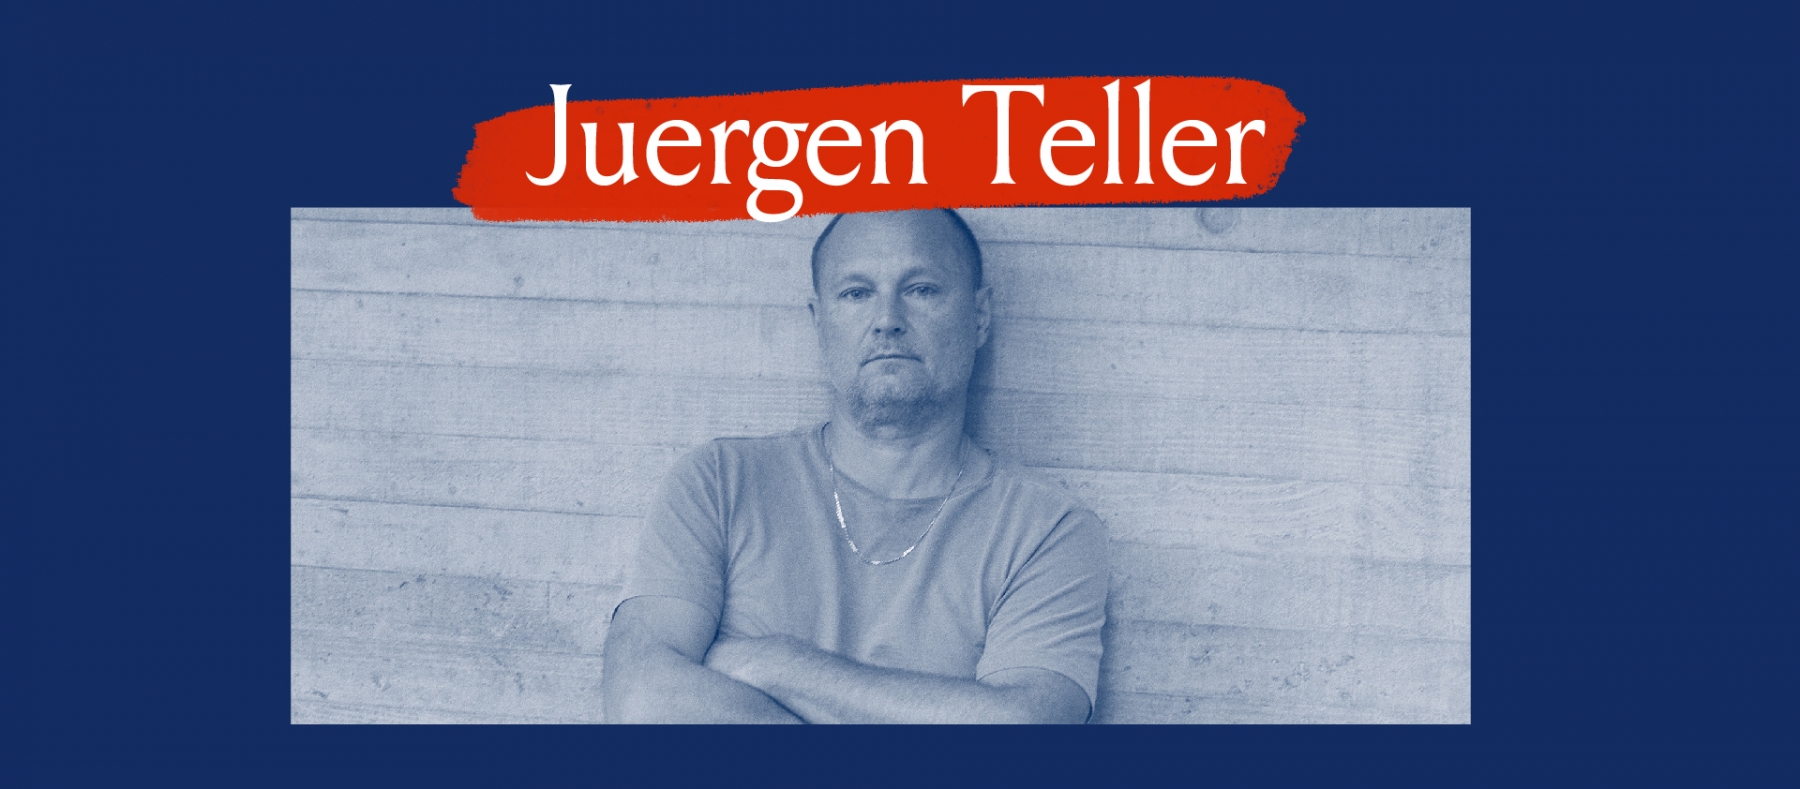 Juergen Teller Portrait Banner